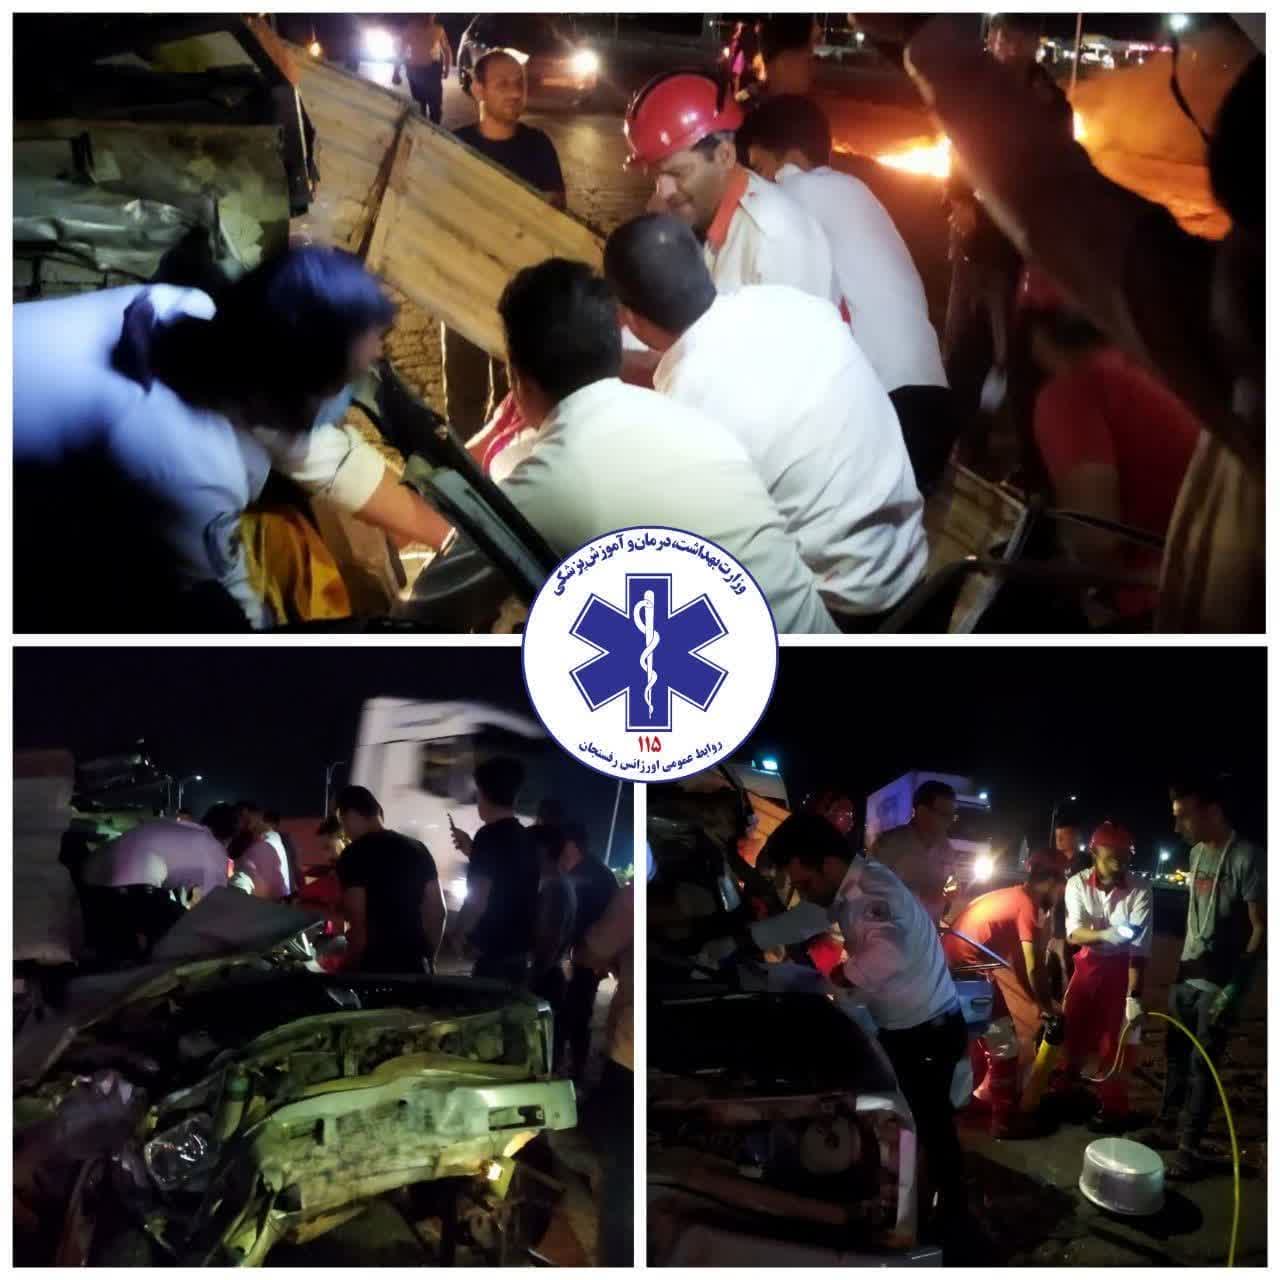 چهار کشته و زخمی در حادثه برخورد وانت مزدا و کامیون در رفسنجان